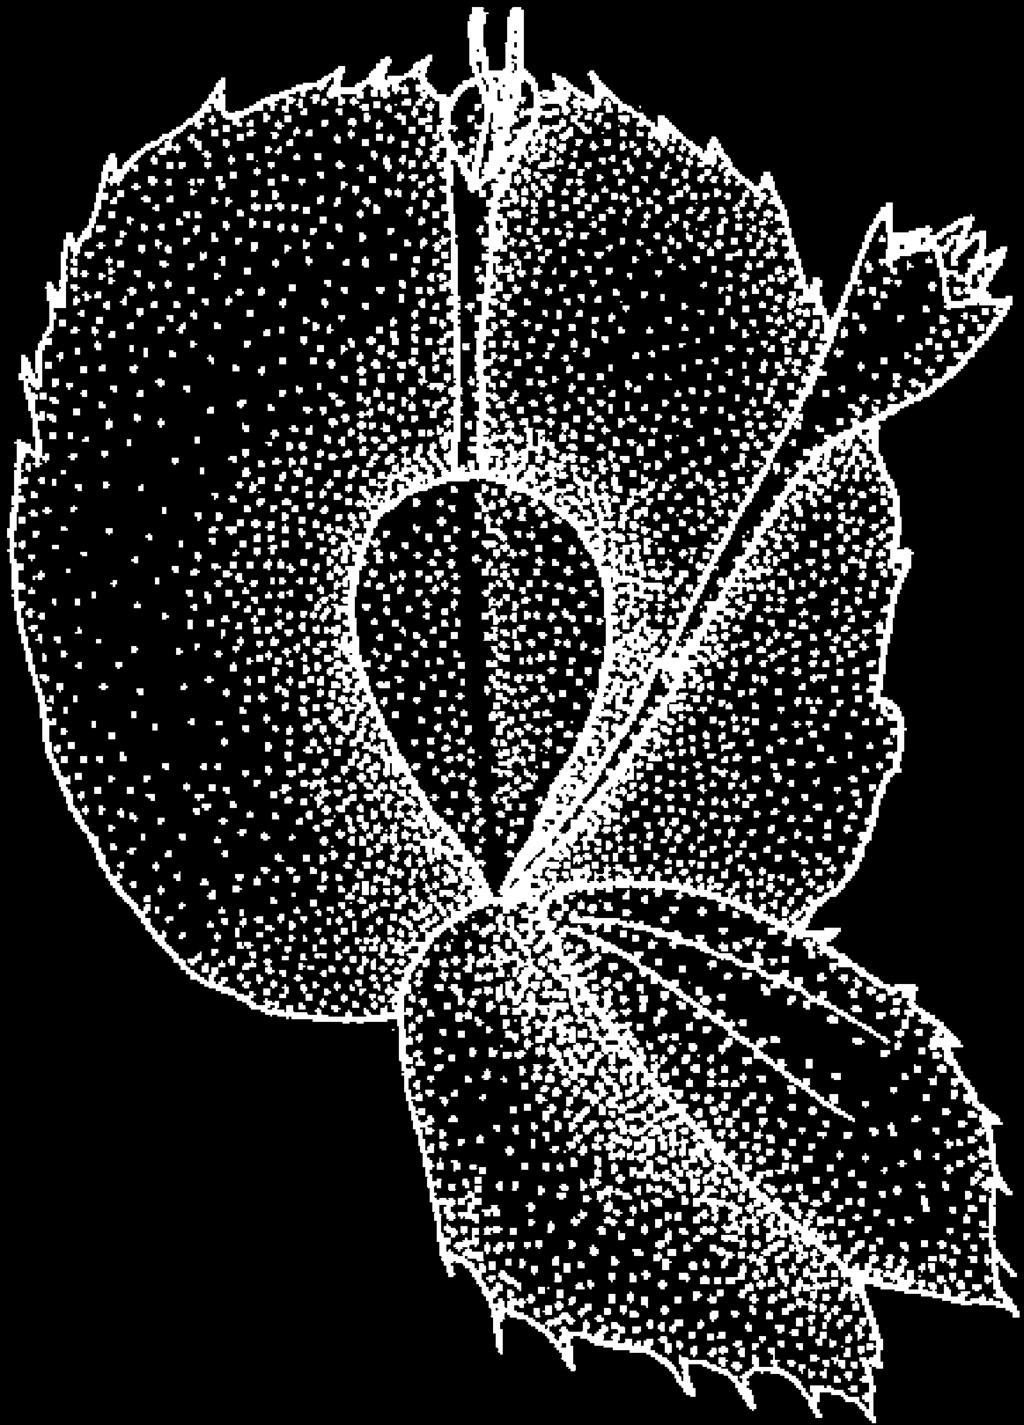 48. Palea and disk floret of Sphagneticola trilobata (L.